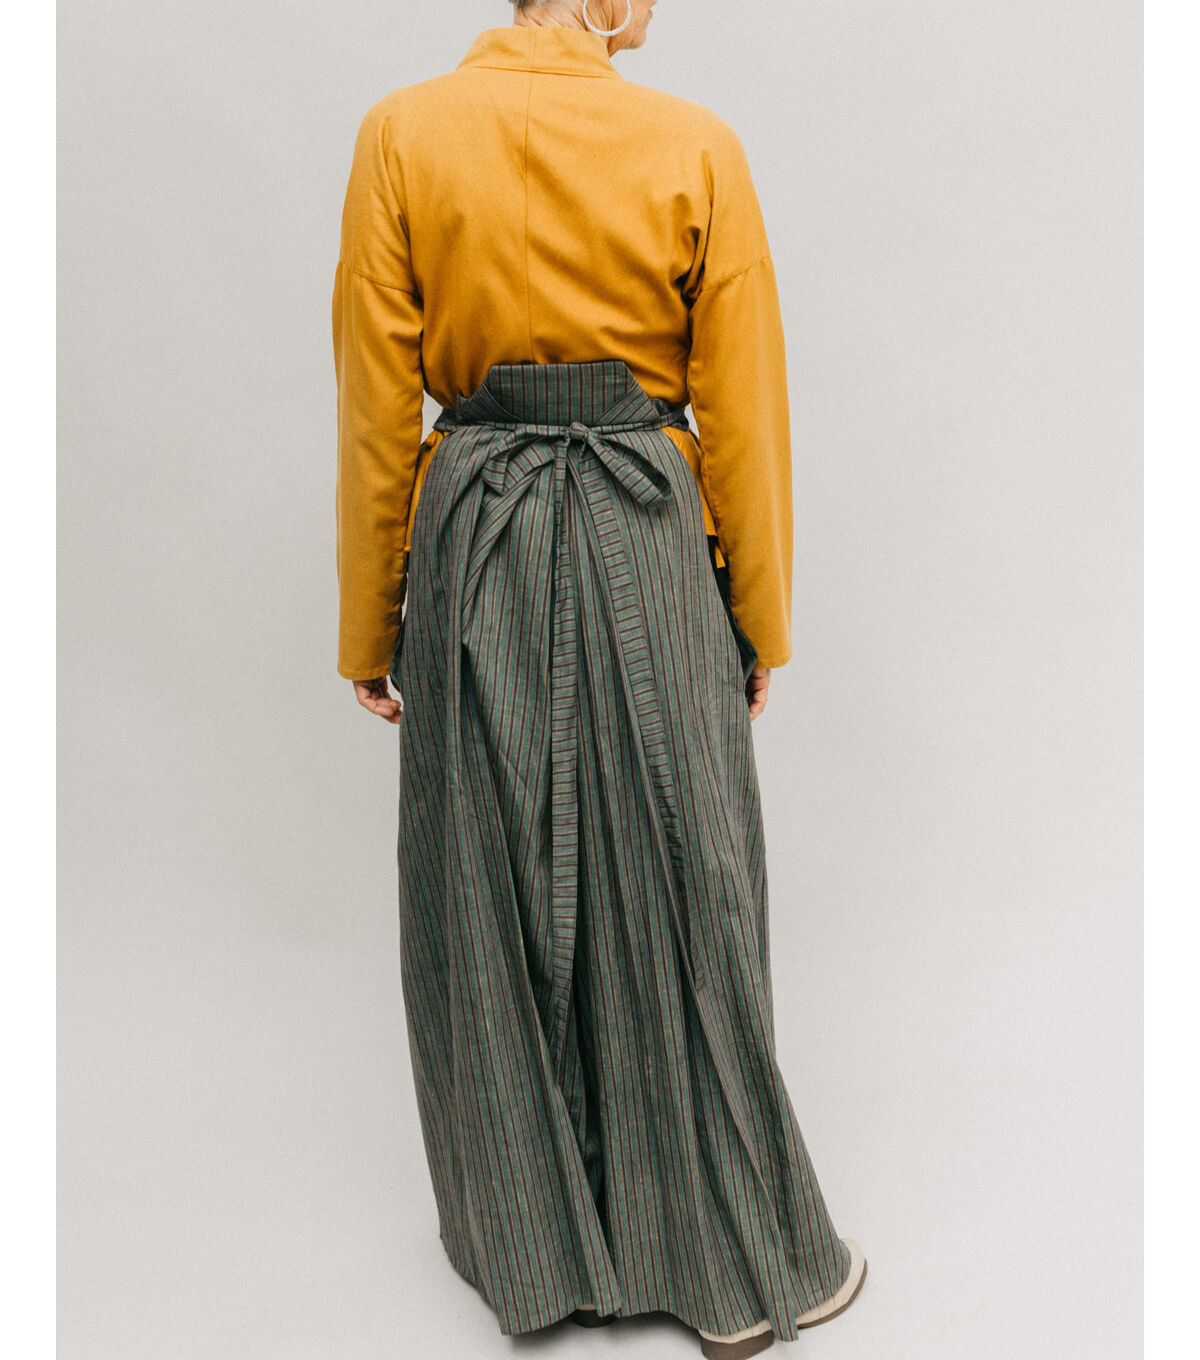 Folkwear 151 Men's & Women's Japanese Hakama & Kataginu Sewing